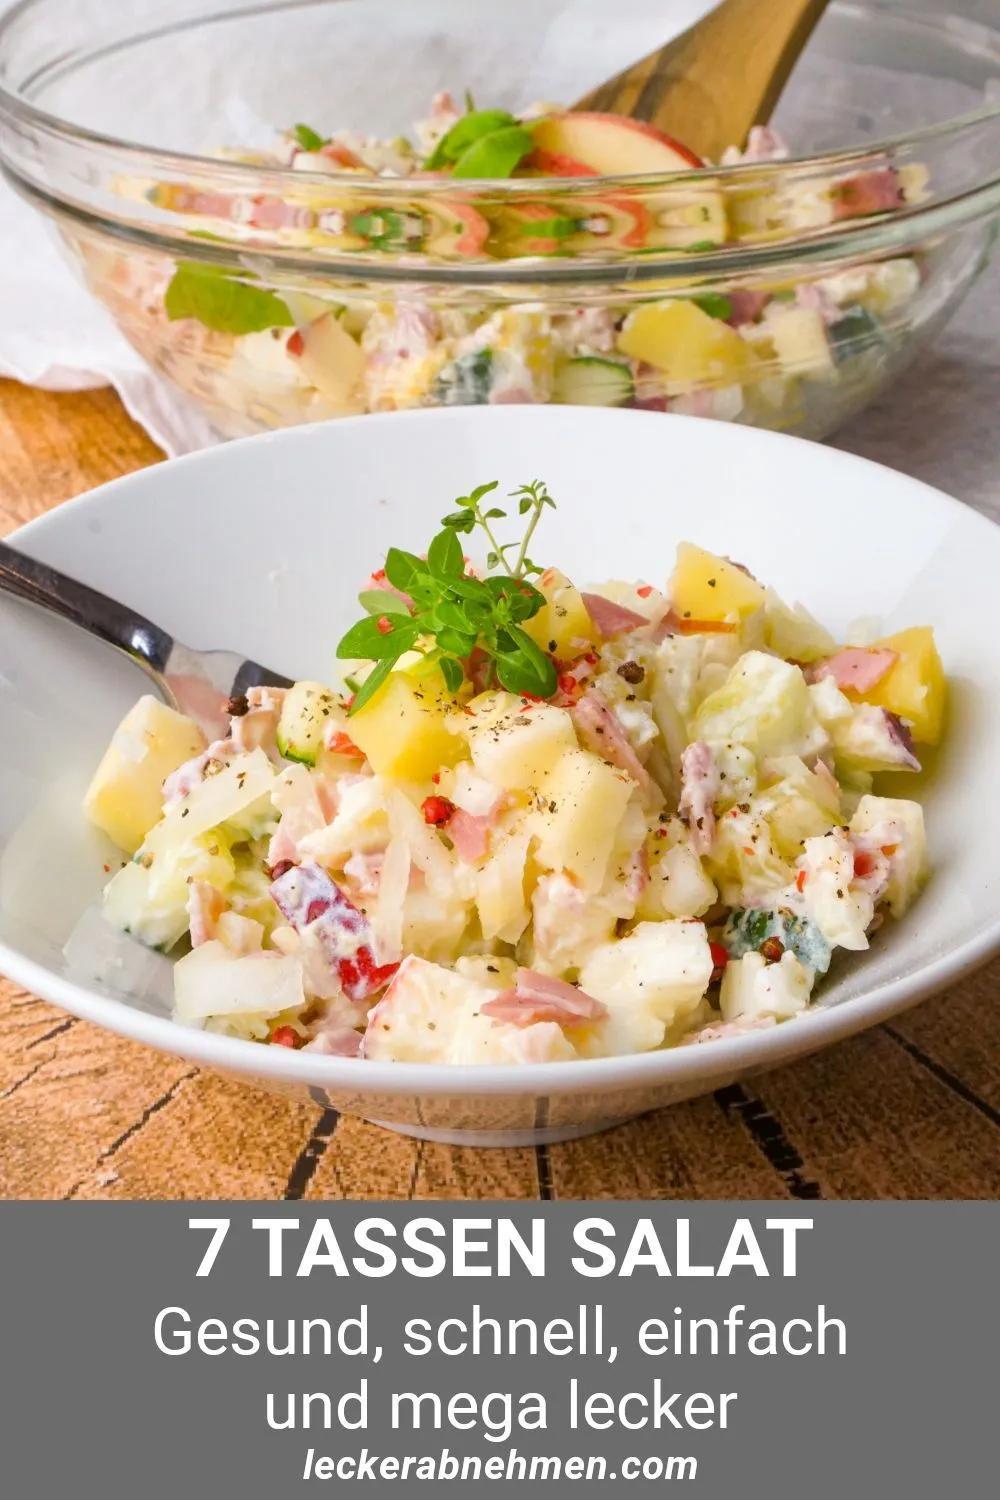 7 Tassen Fitness Salat Gesundes und einfaches Salat Rezept zum Abnehmen ...